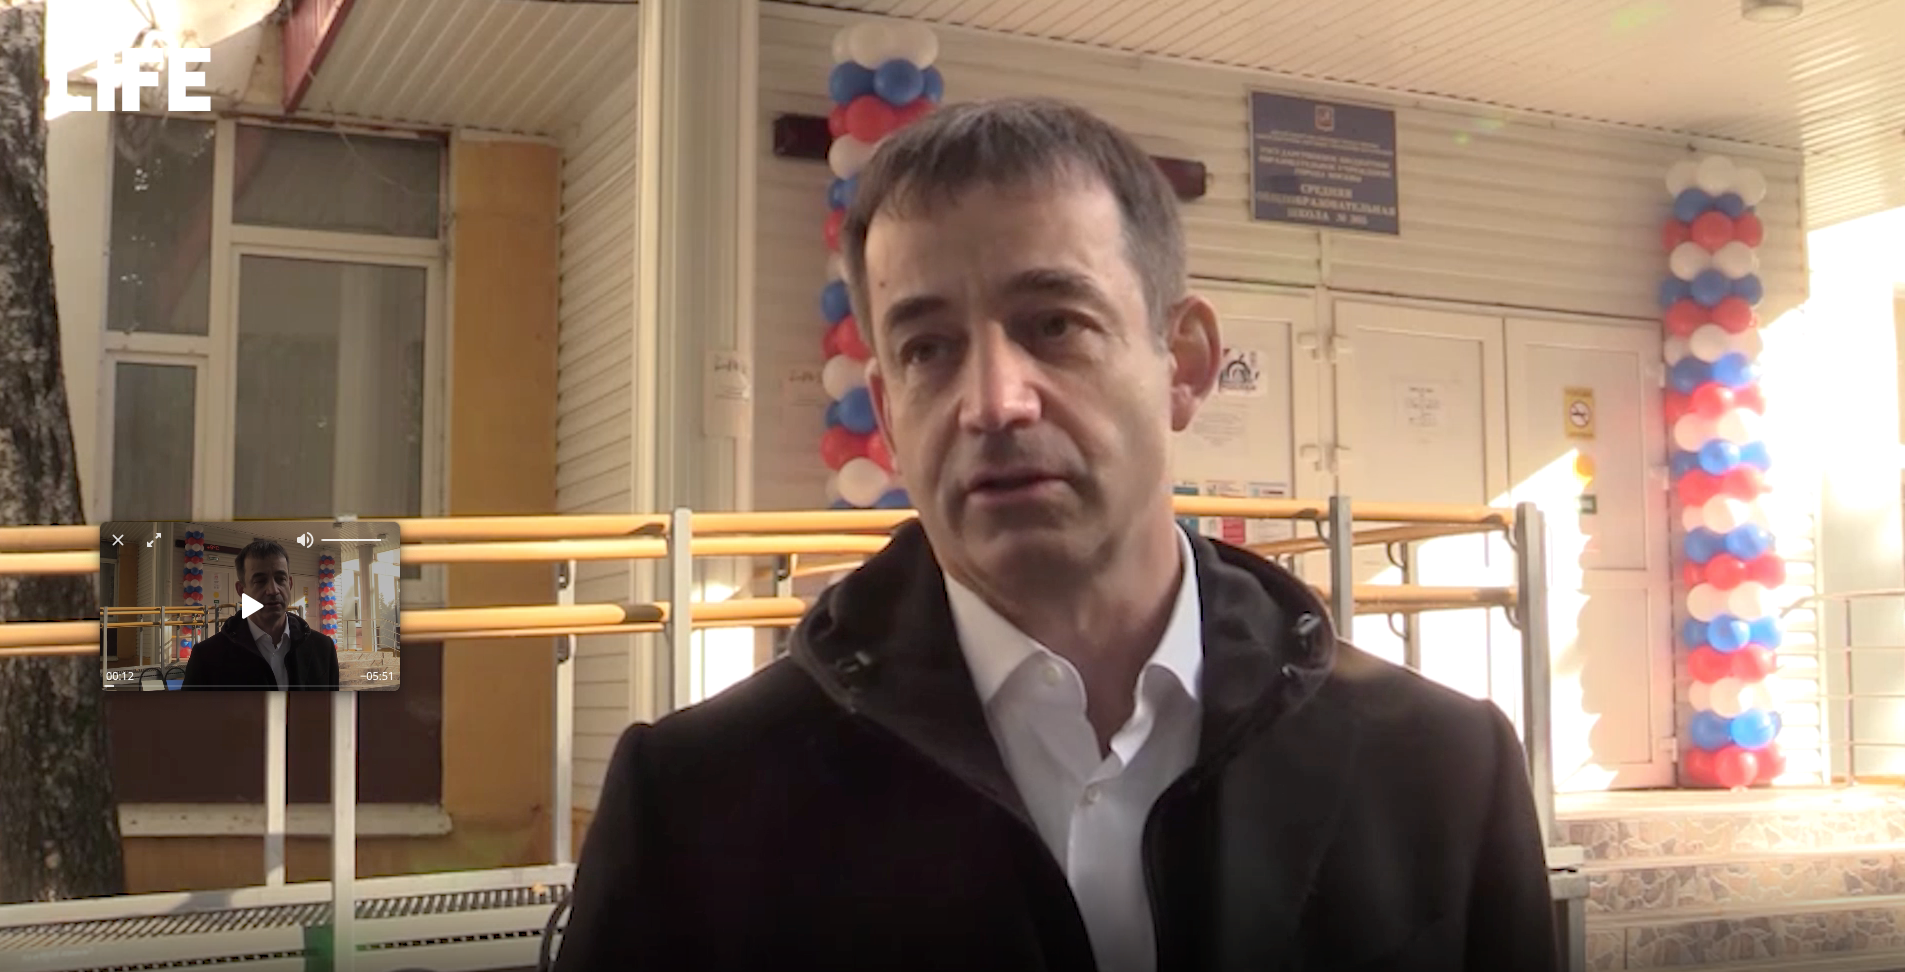 Кандидат в депутаты Певцов лично проверил работу избирательных участков в Москве